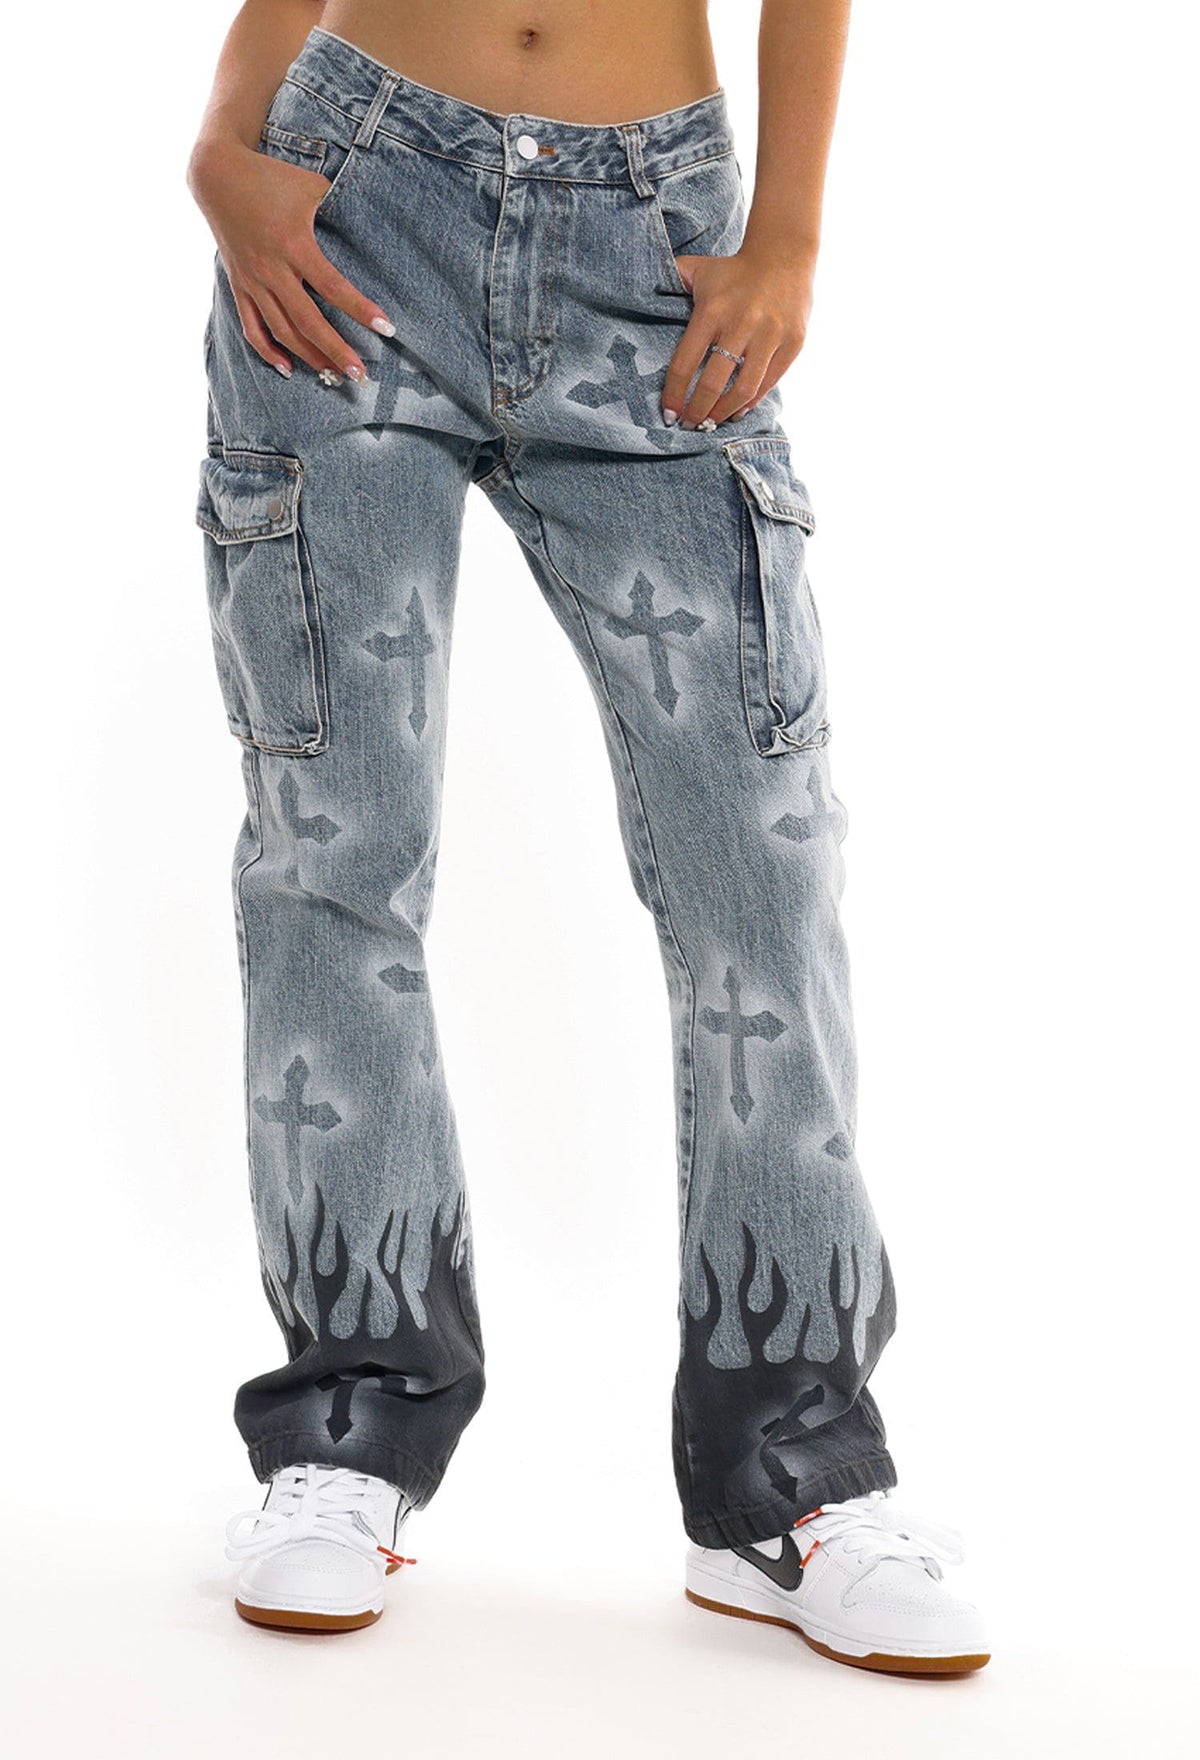 Eprezzy® - Flame & Cross Vibe Slim Jeans Streetwear Fashion - eprezzy.com